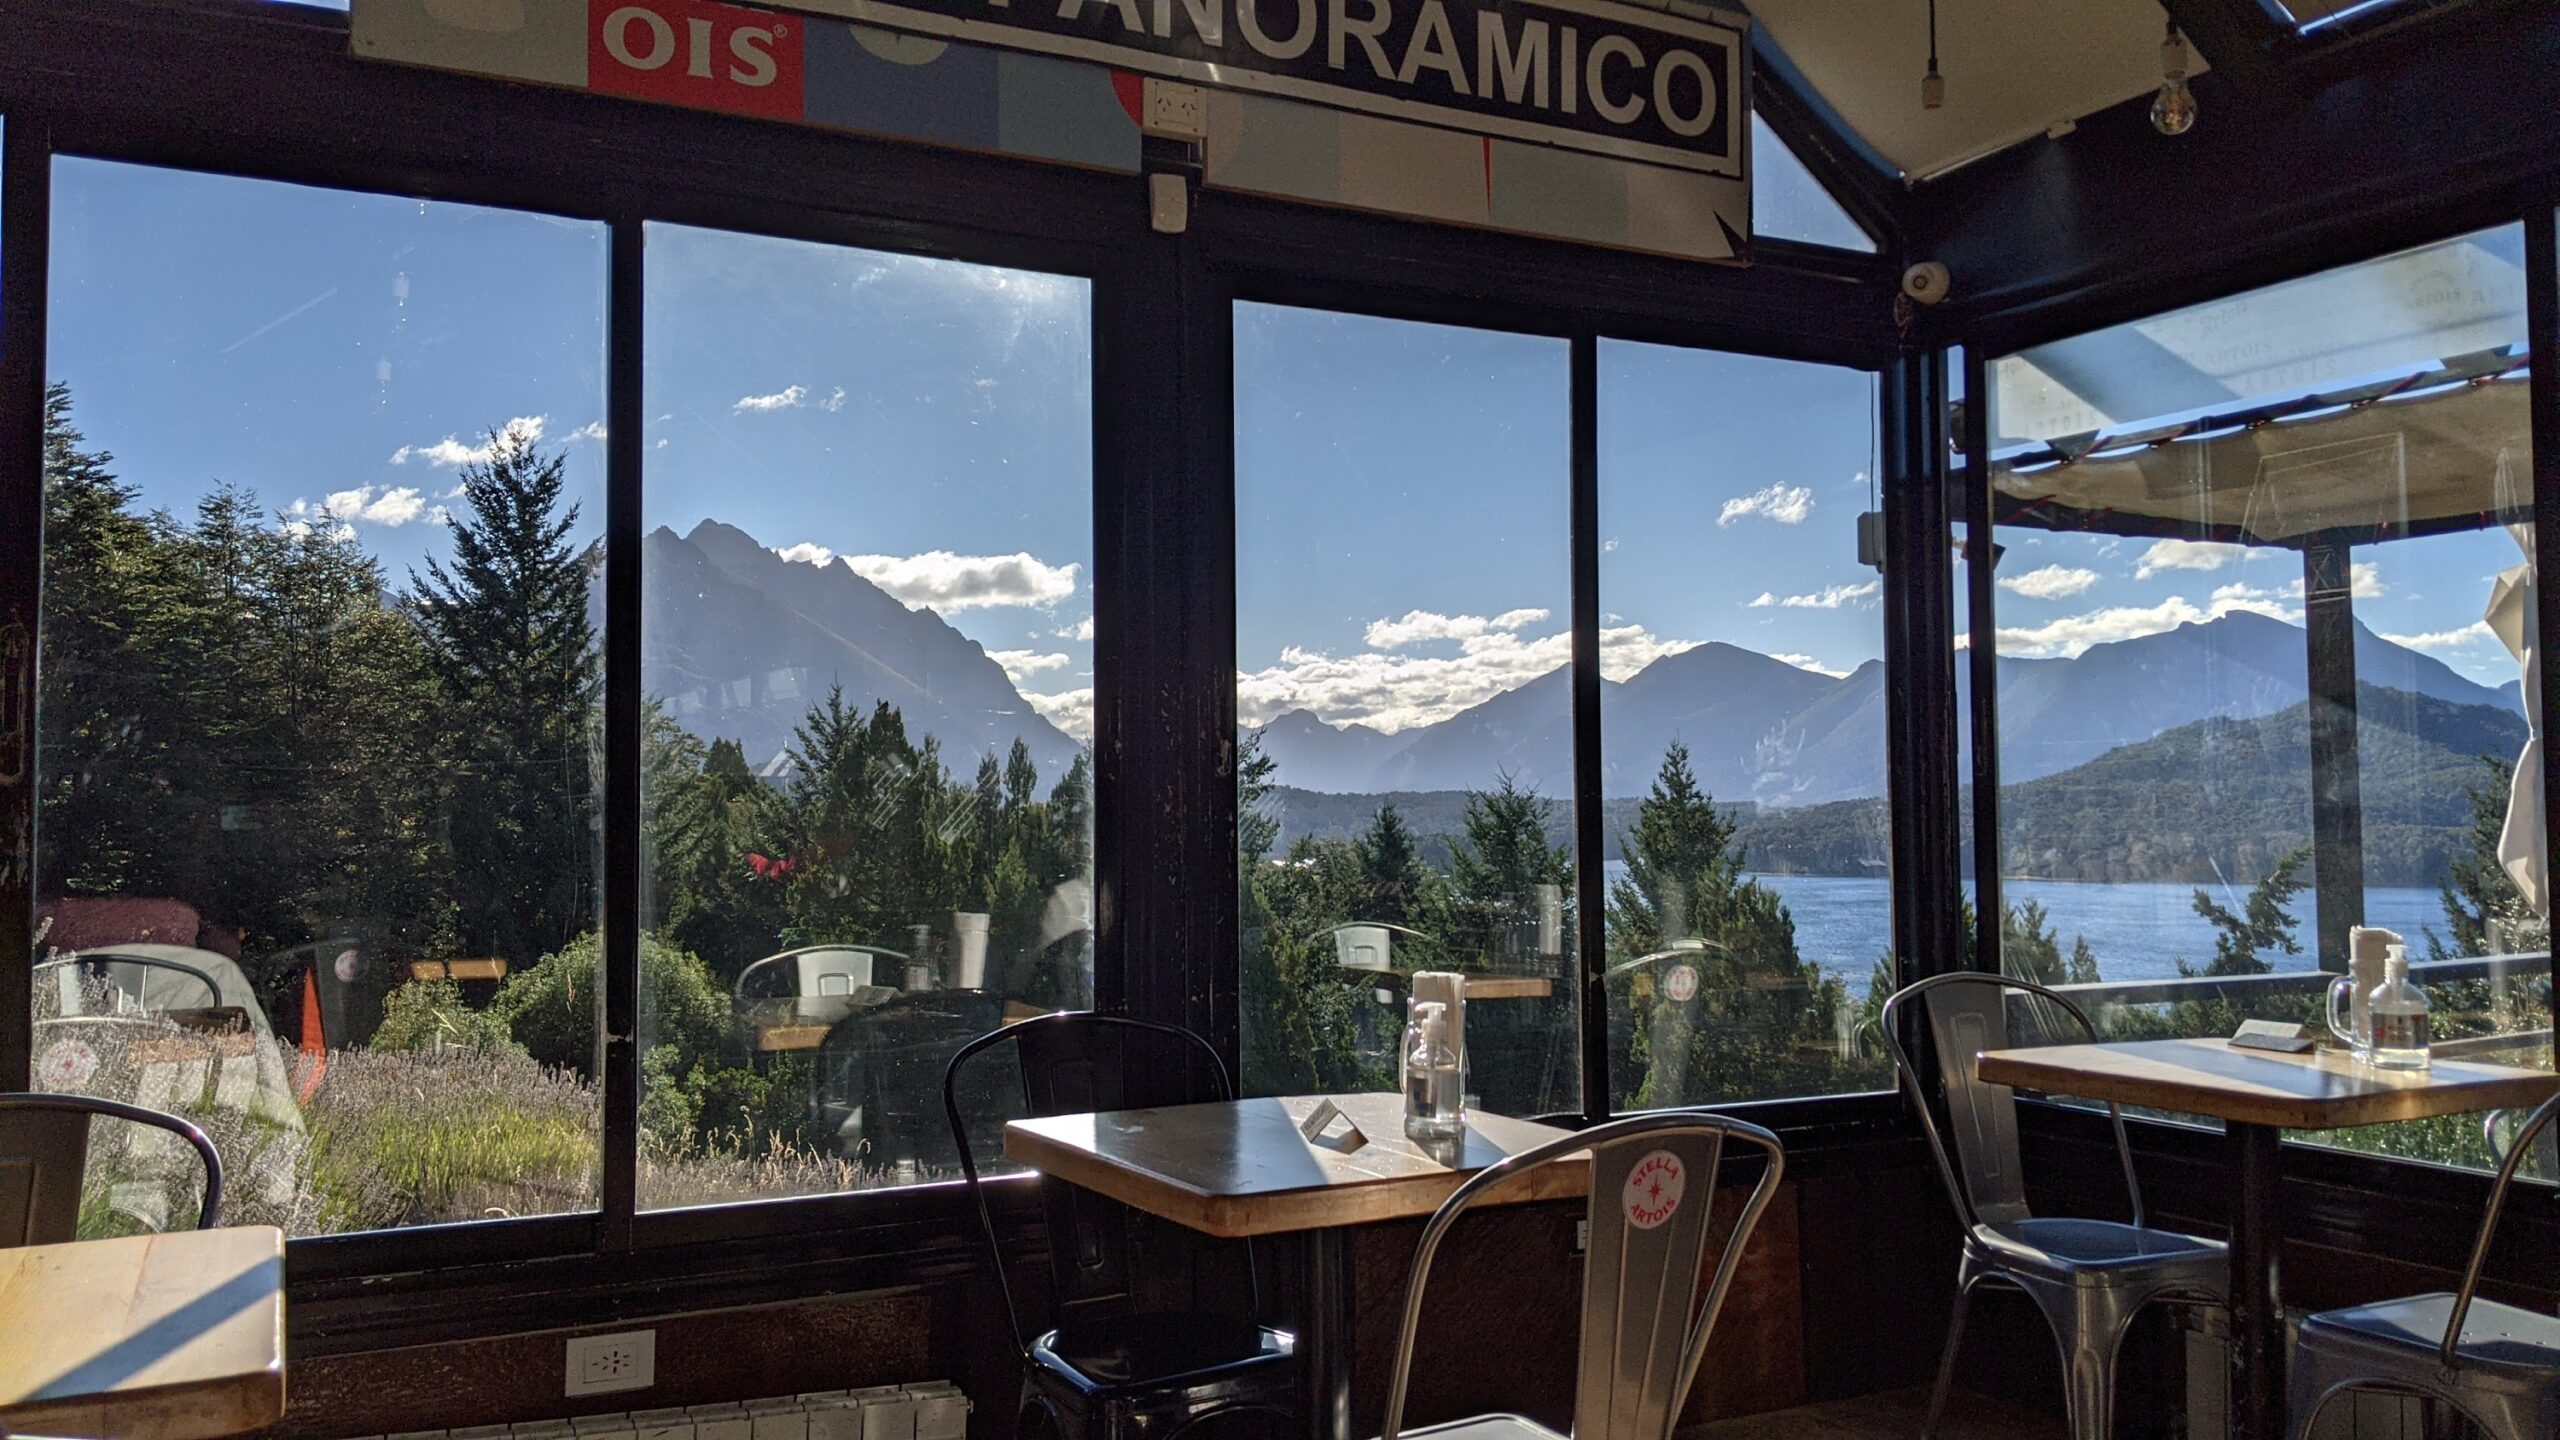 Restaurante-Punto-Panoramico-San-carlos